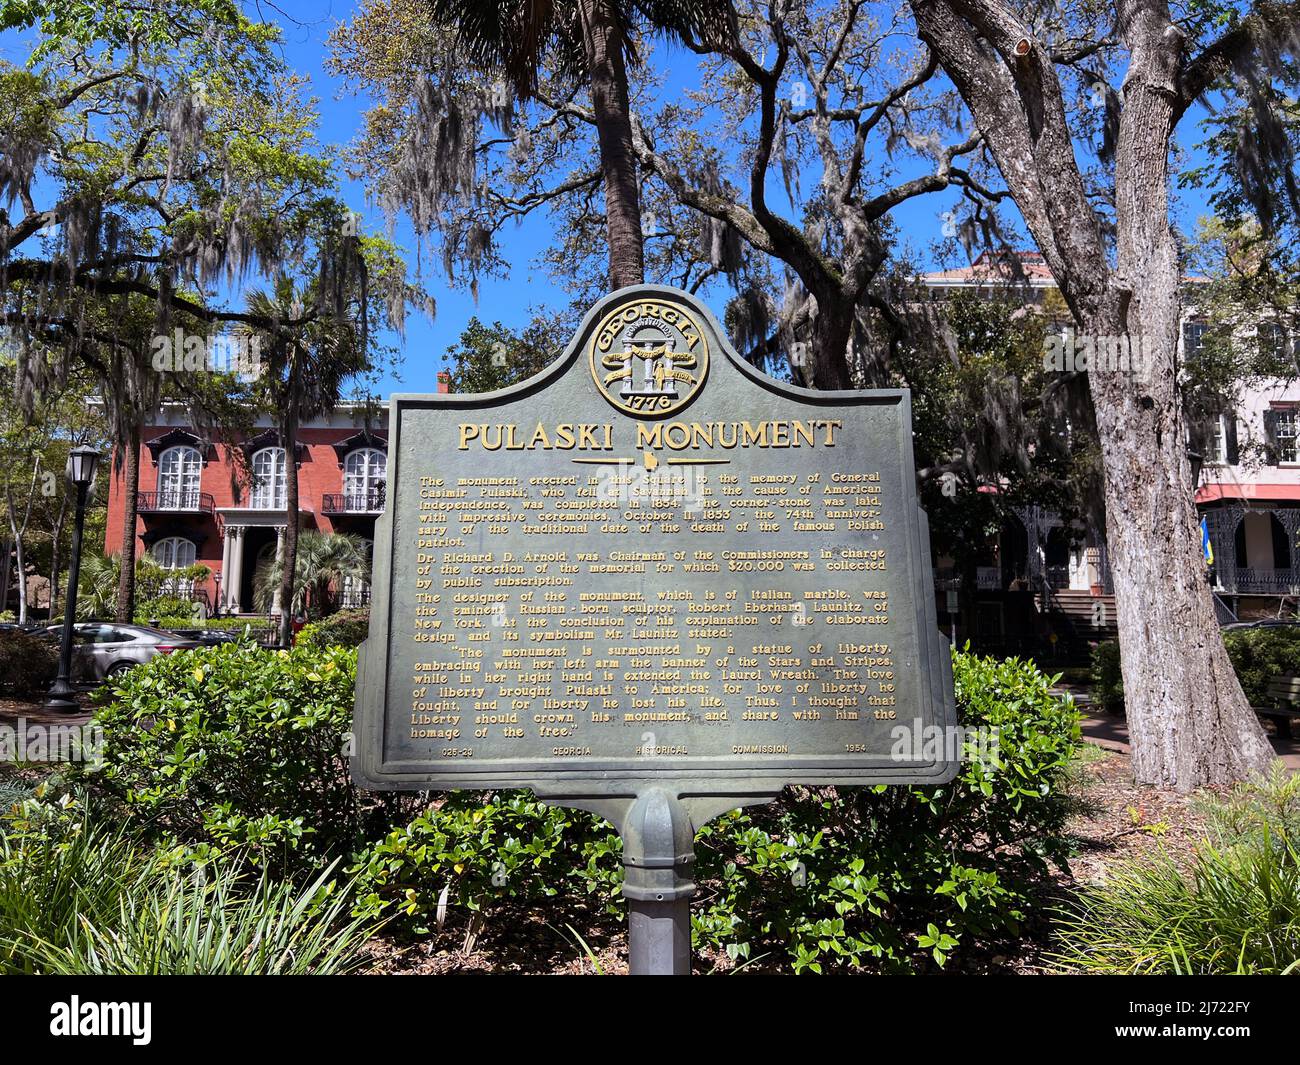 27 marzo 2022 - Savannah, Georgia, Stati Uniti: Situata nella storica Monterey Square, una targa fornisce informazioni sul monumento Pulaski, Foto Stock